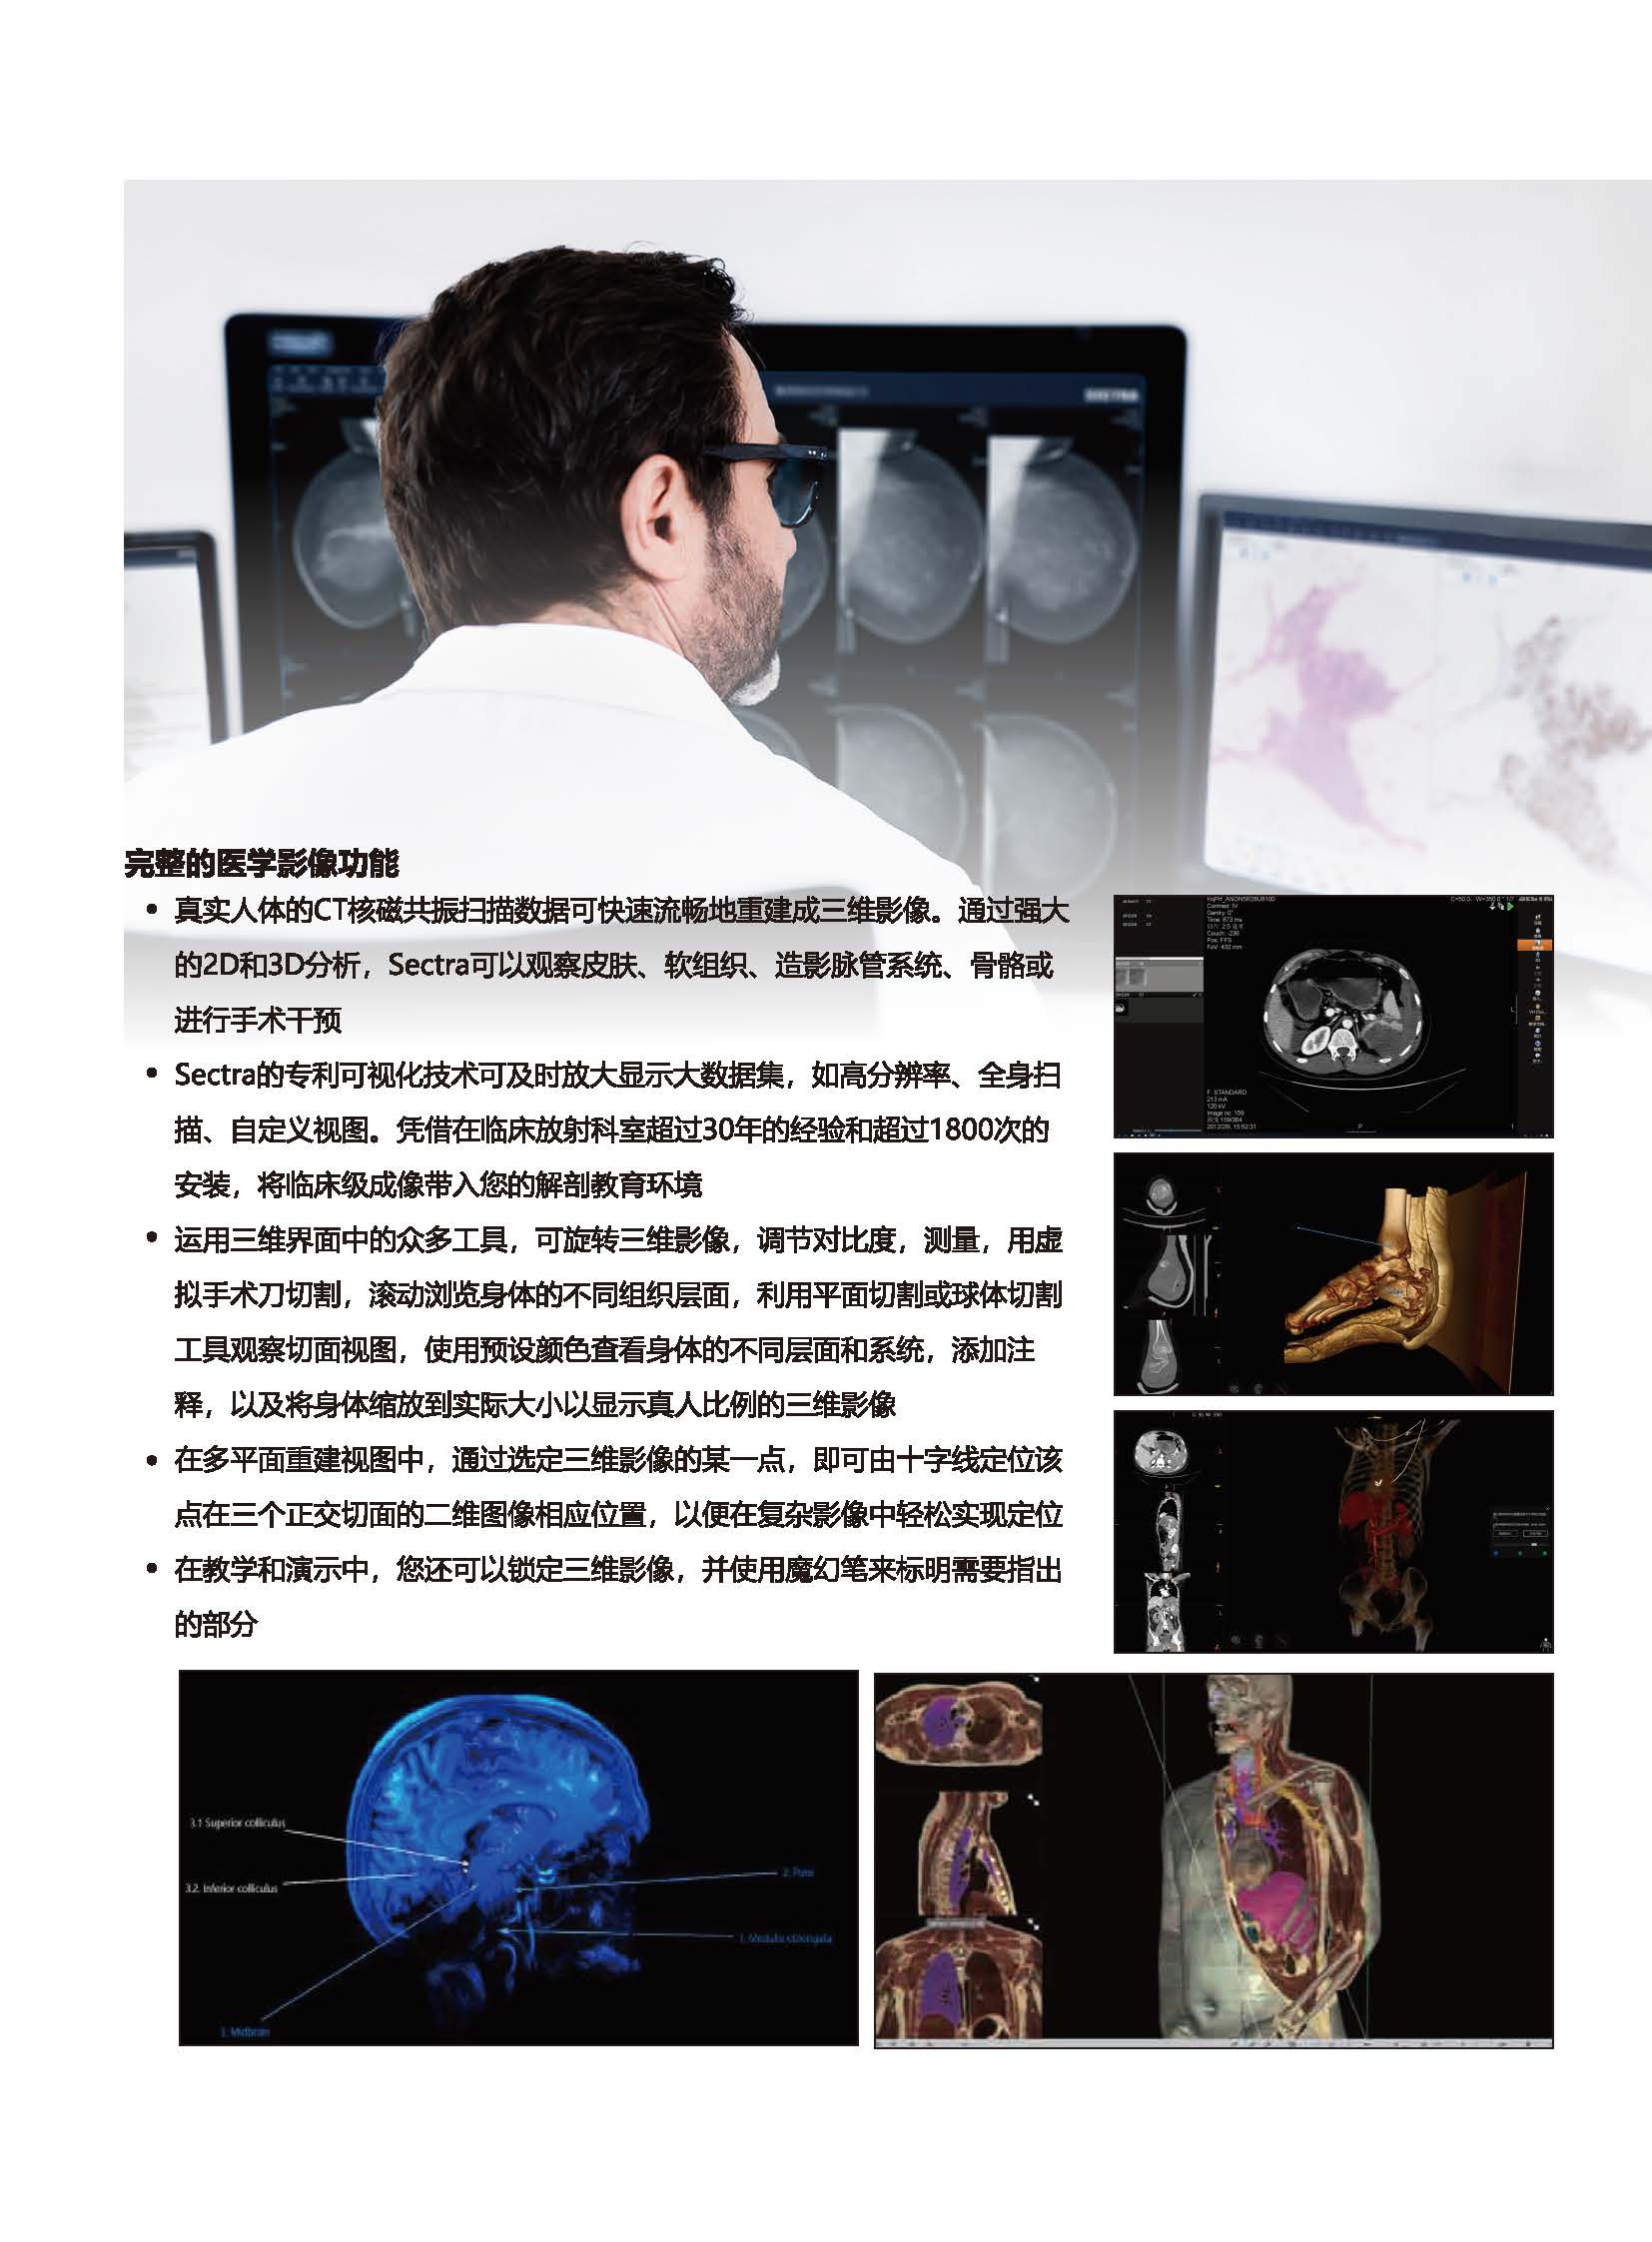 临床预手术教学和手术解剖系统官网用_页面_3.jpg